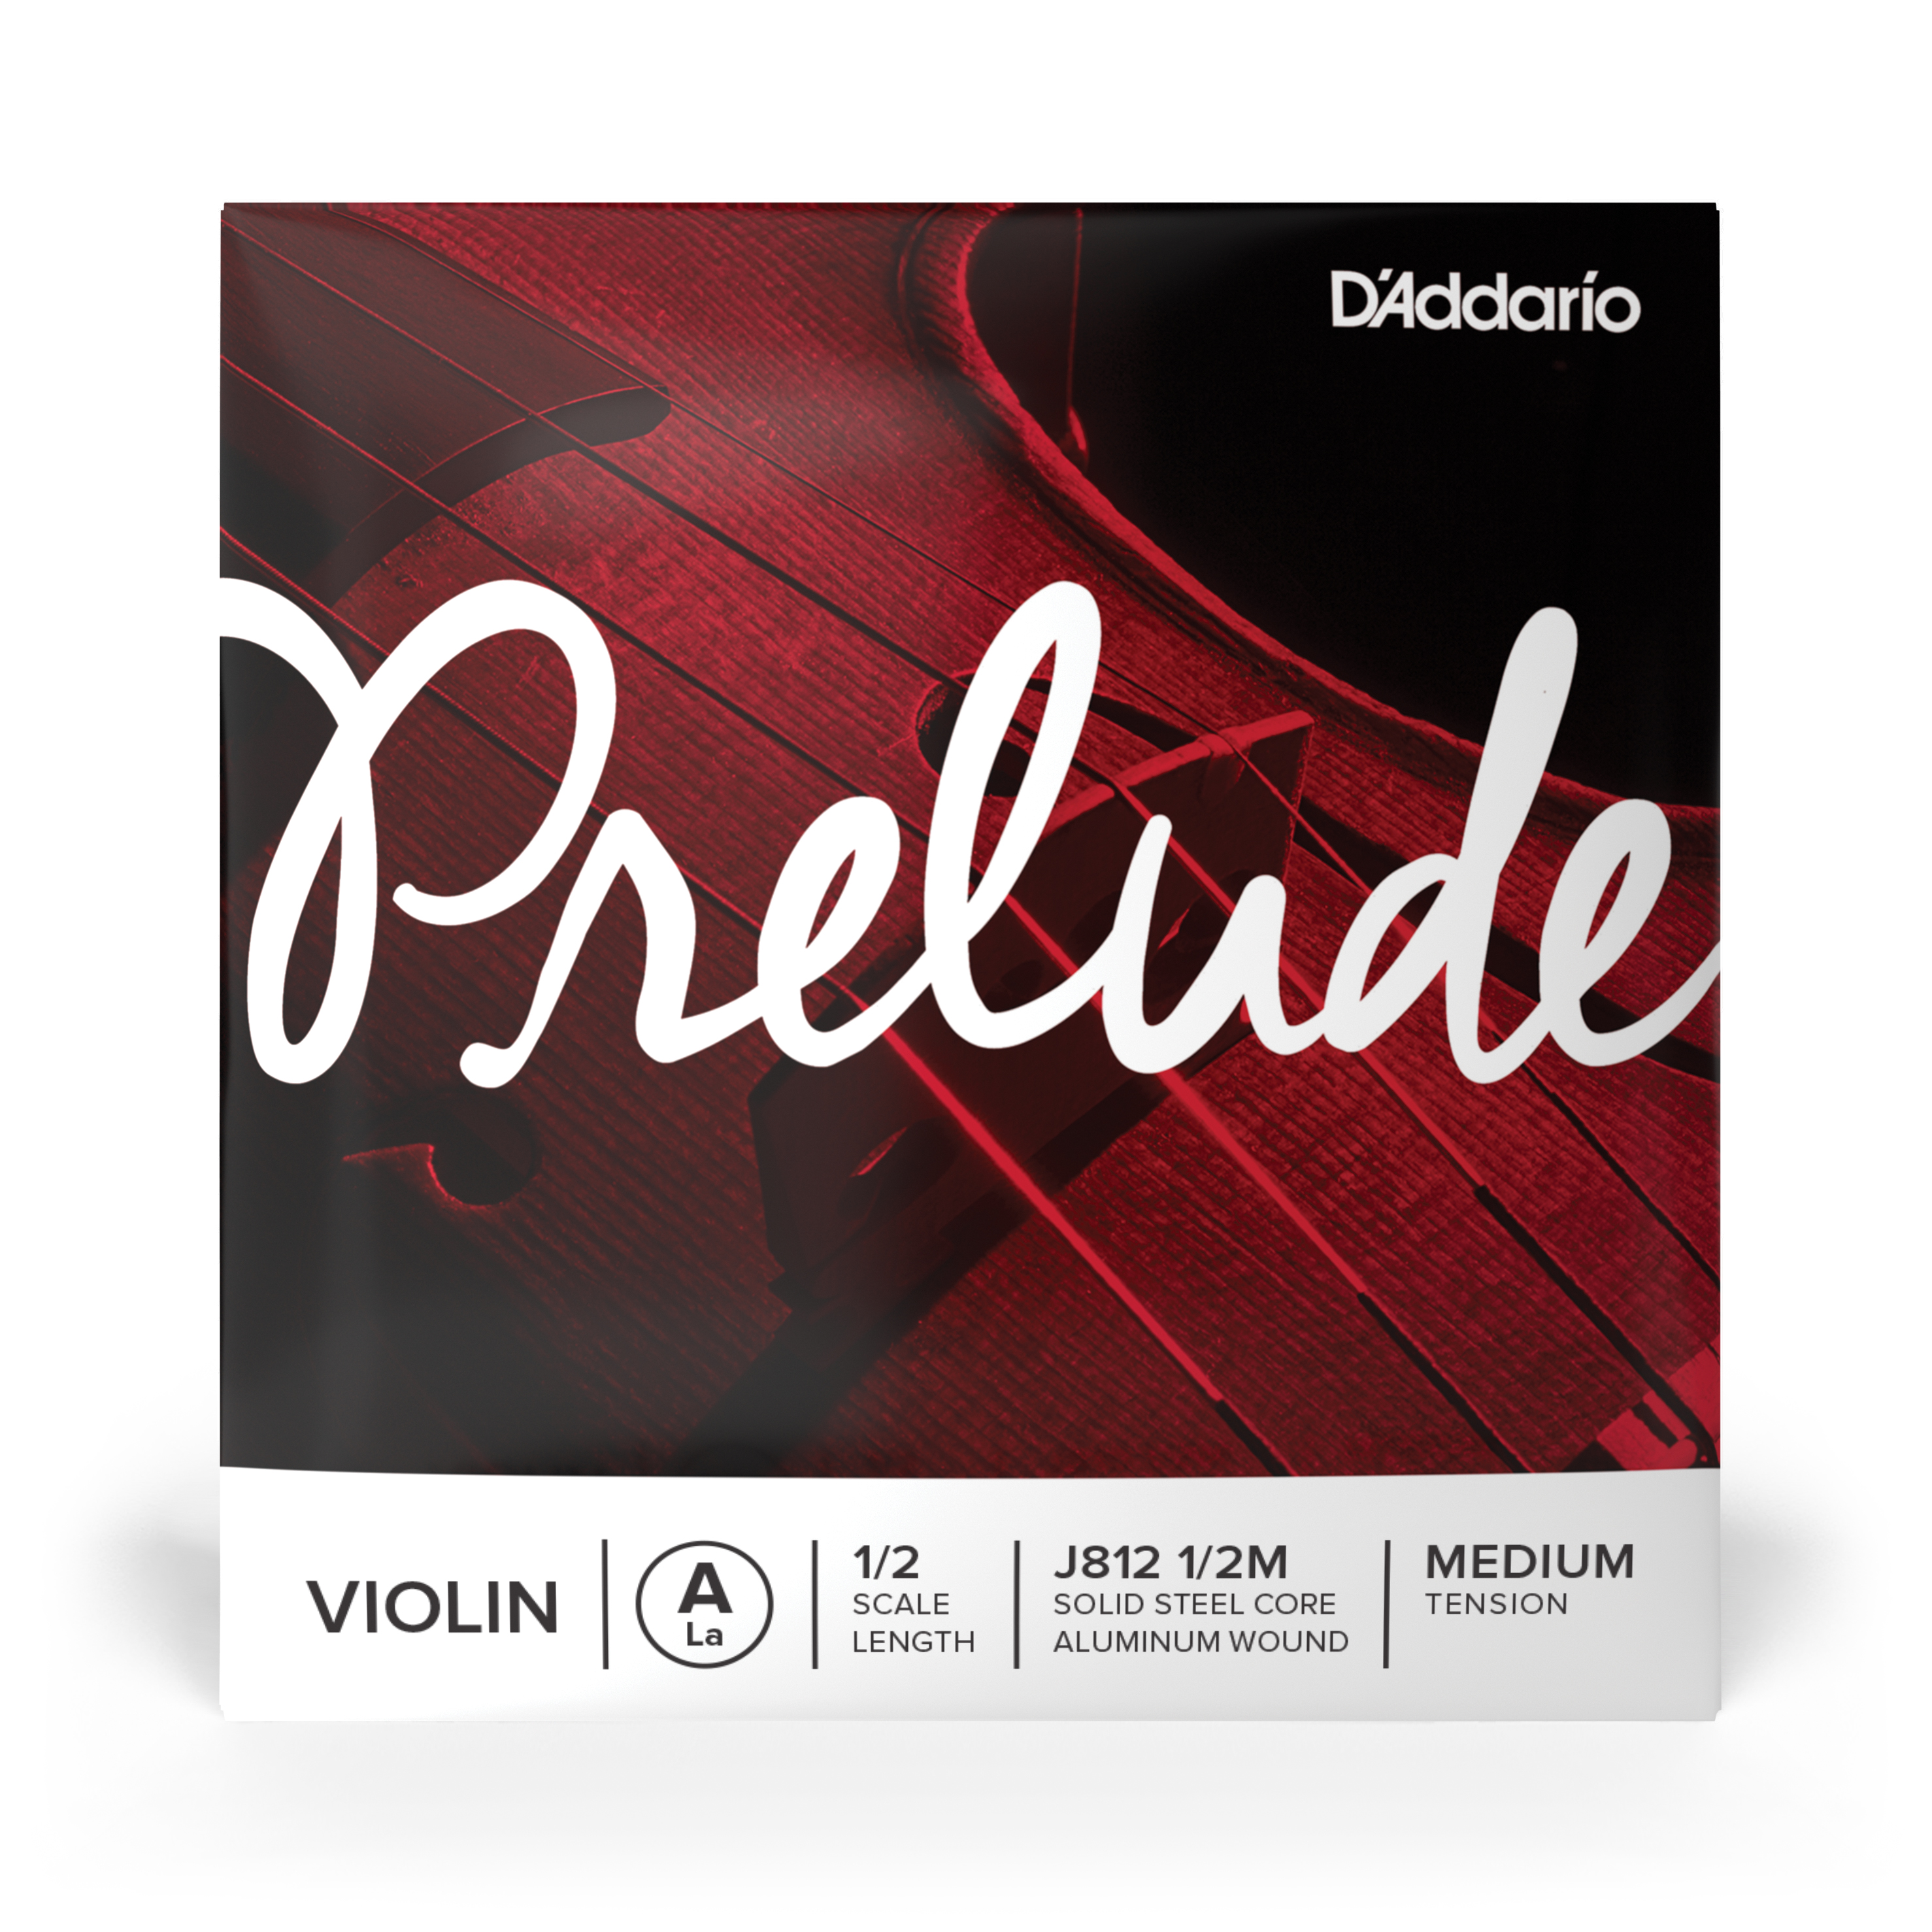 Daddario orchestral it J812 1/2m corda singola la d'addario prelude per violino, scala 1/2, tensione media